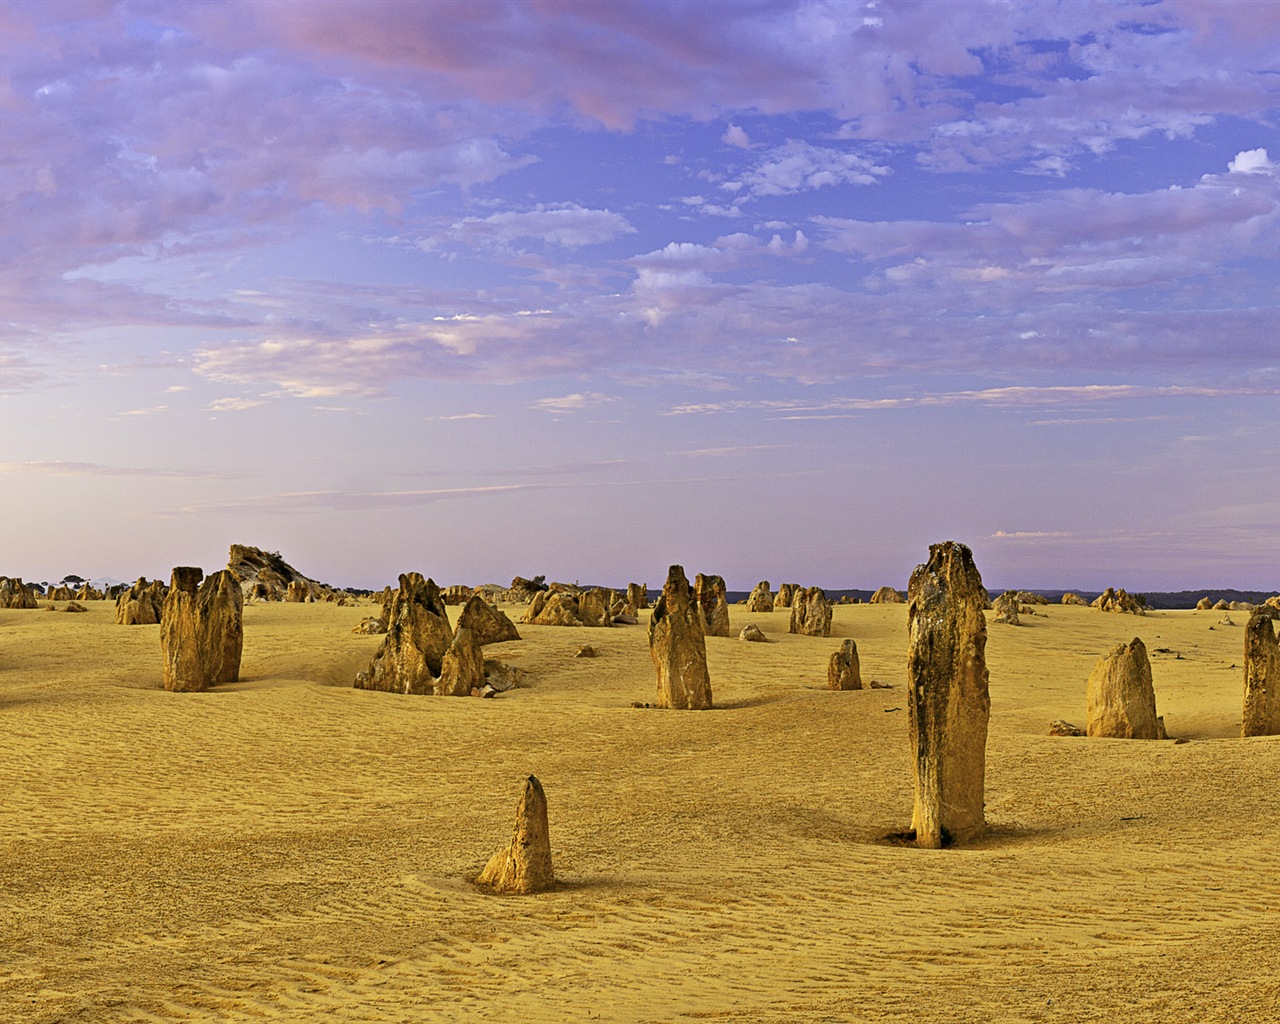 Les déserts chauds et arides, de Windows 8 fonds d'écran widescreen panoramique #8 - 1280x1024